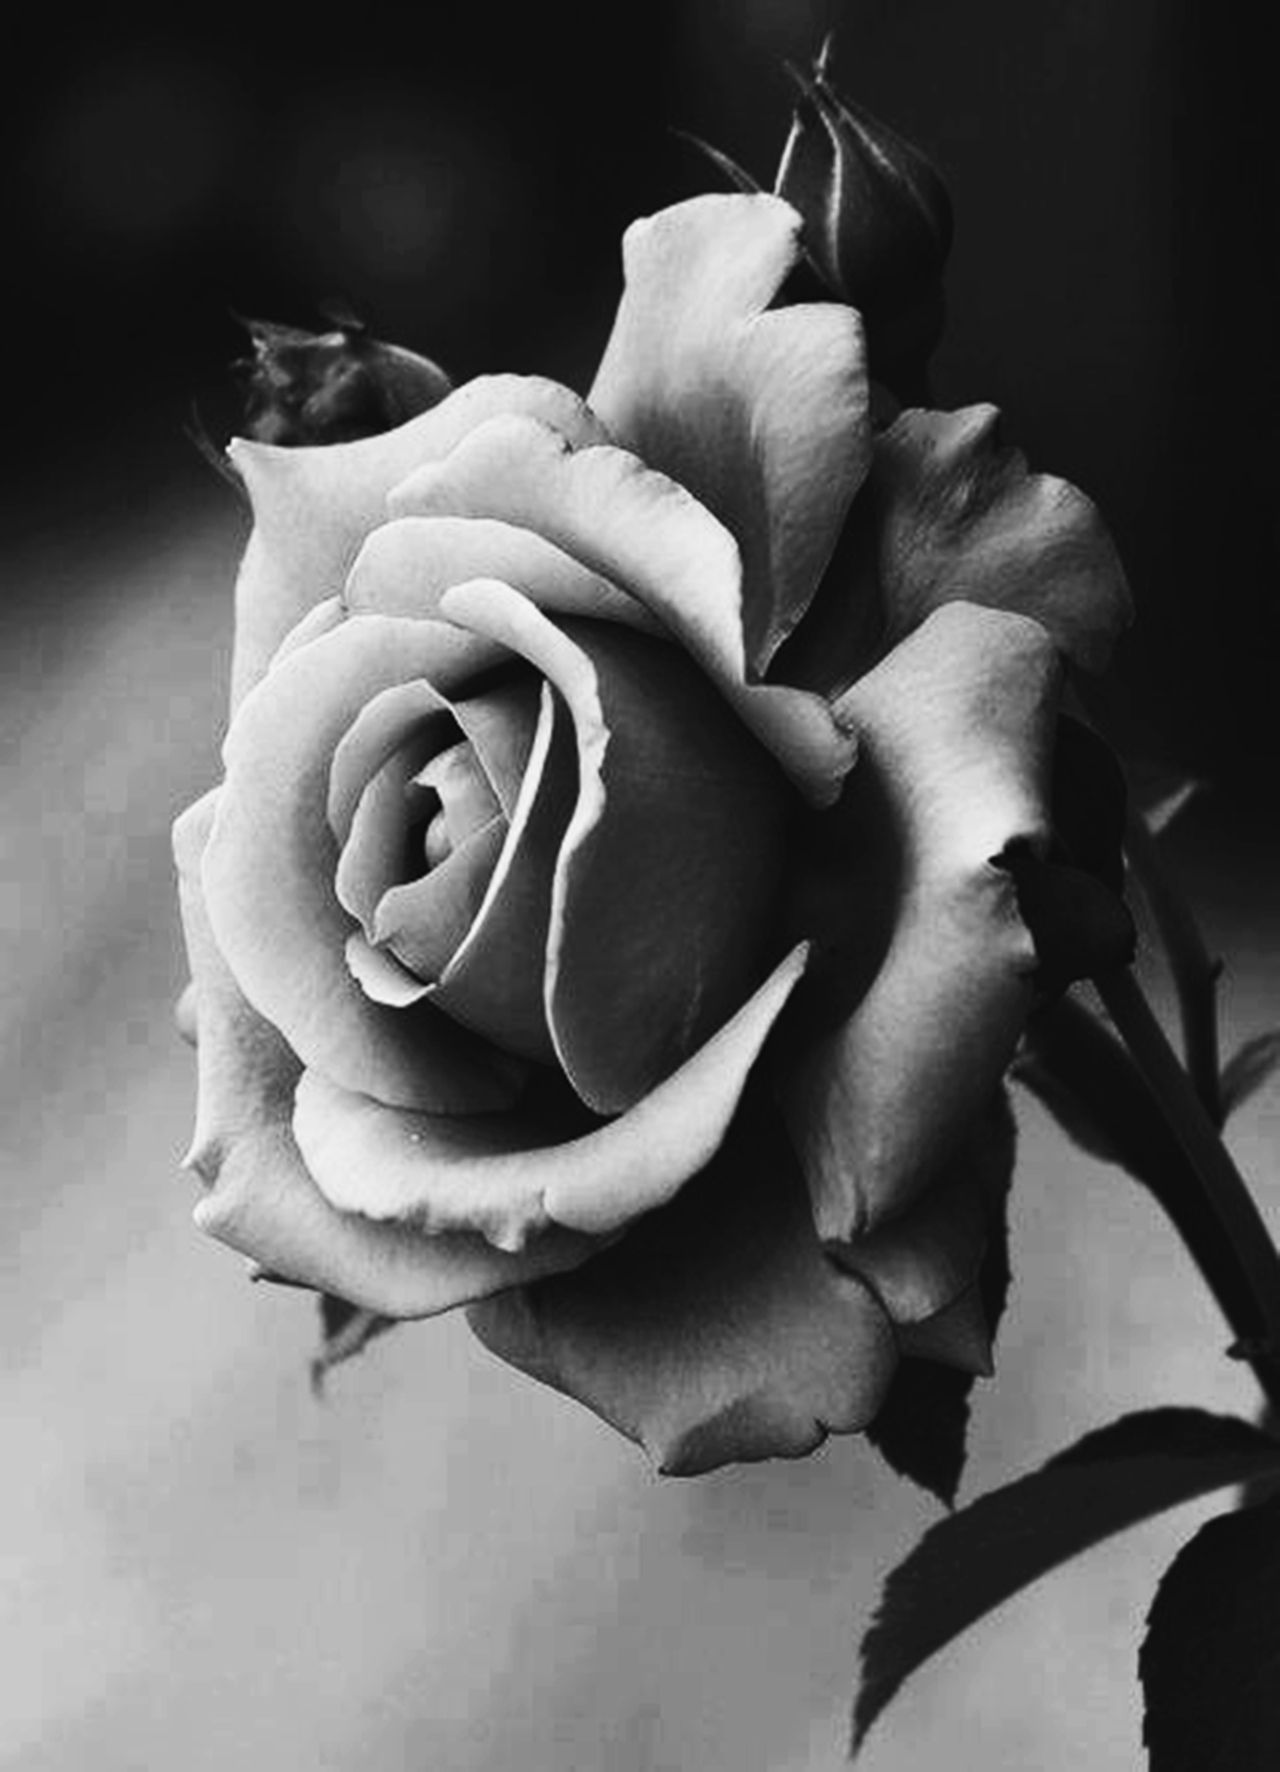 Роза чёрно белая